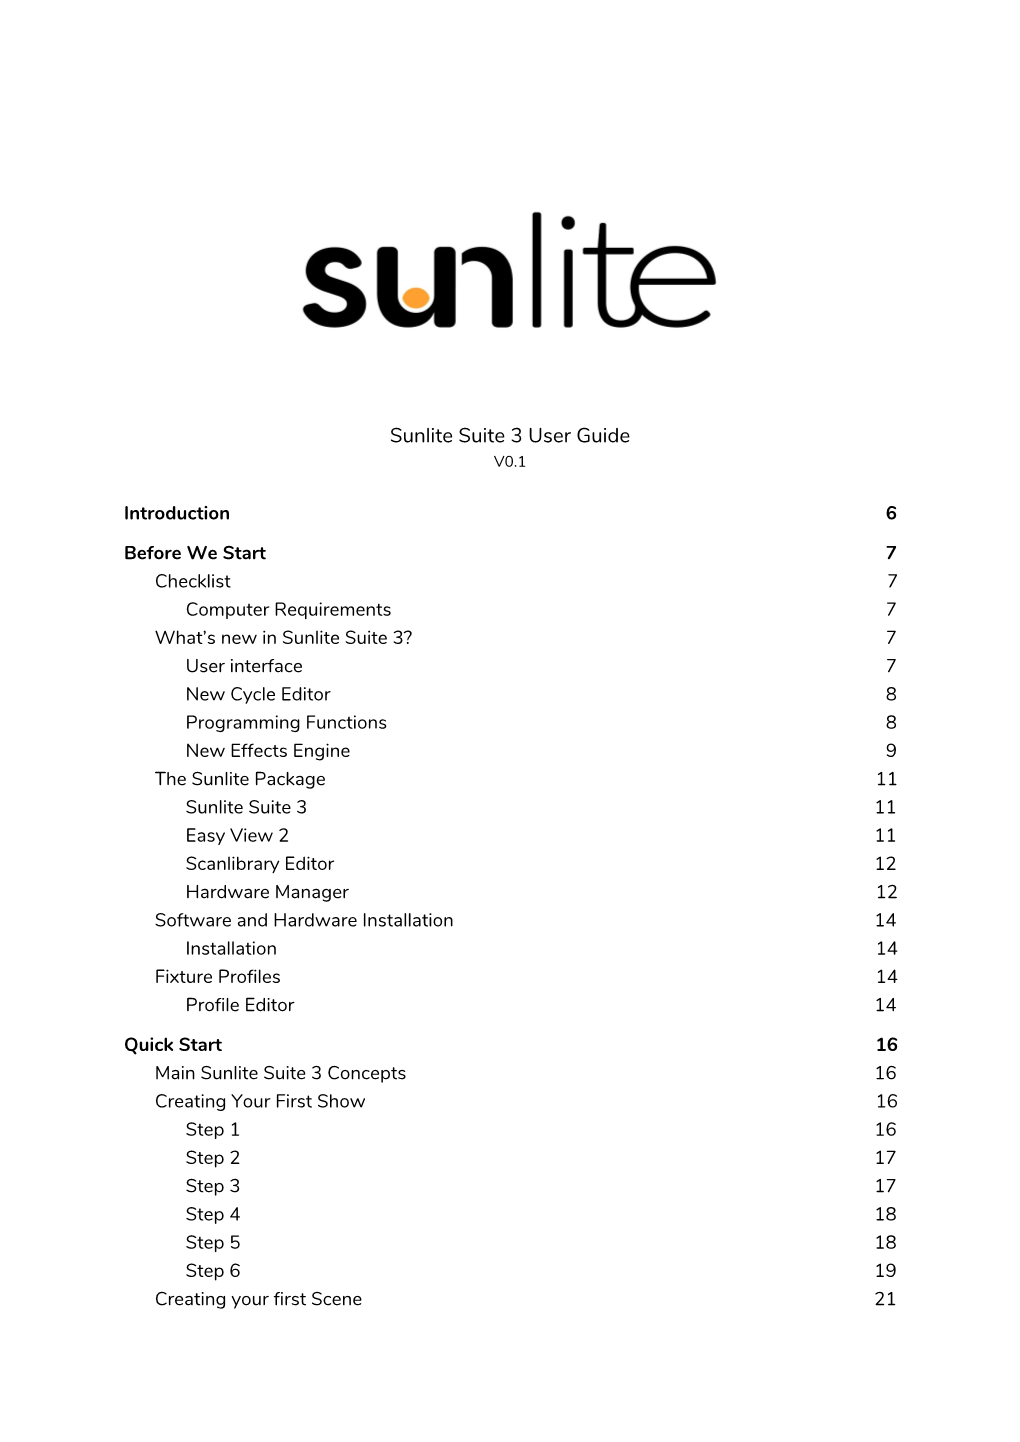 Sunlite Suite 3 User Guide V0.1